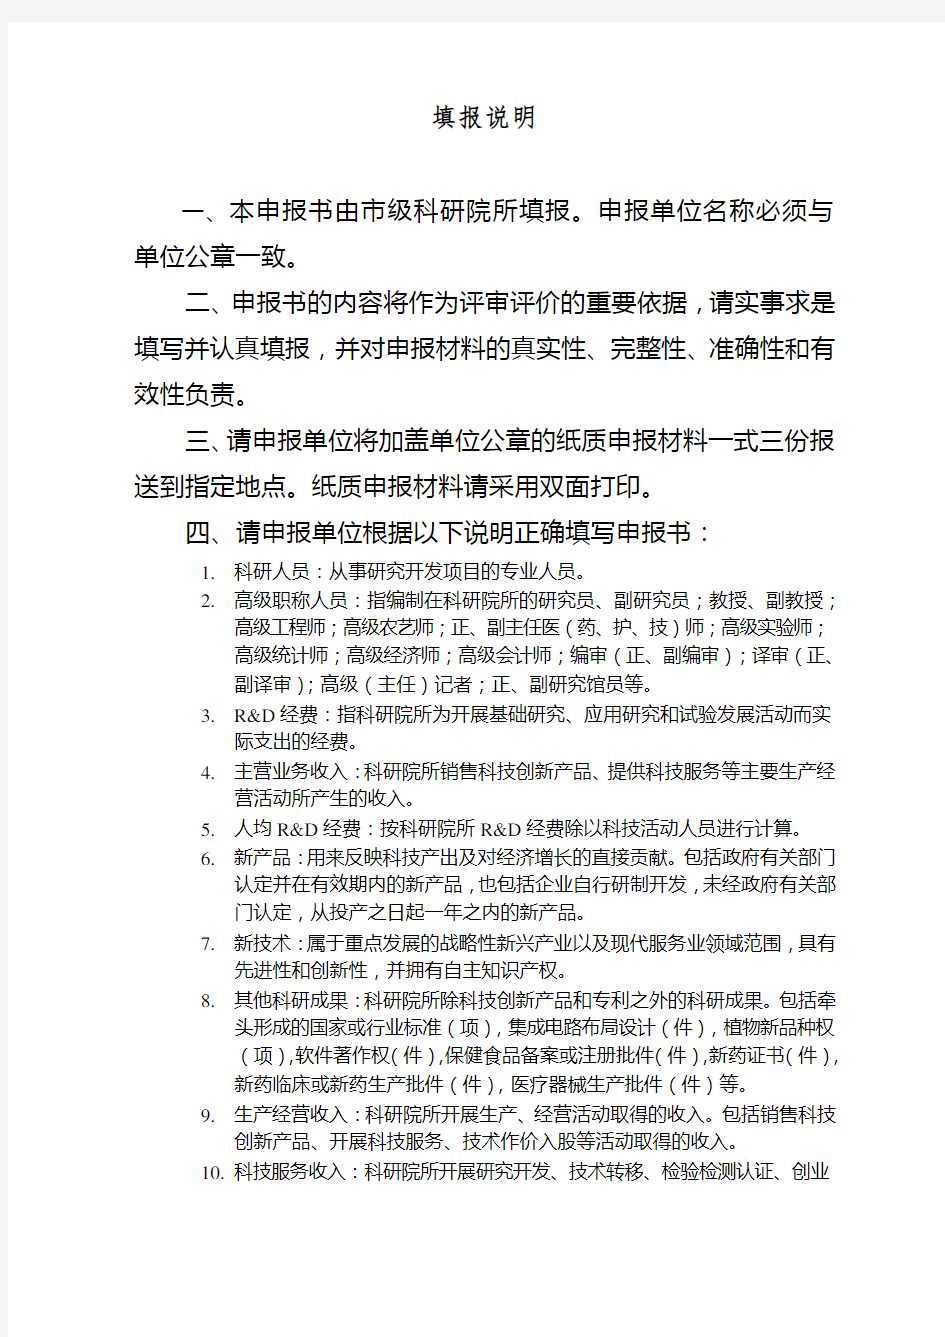 重庆市科研机构绩效激励引导专项申报书(转制类)